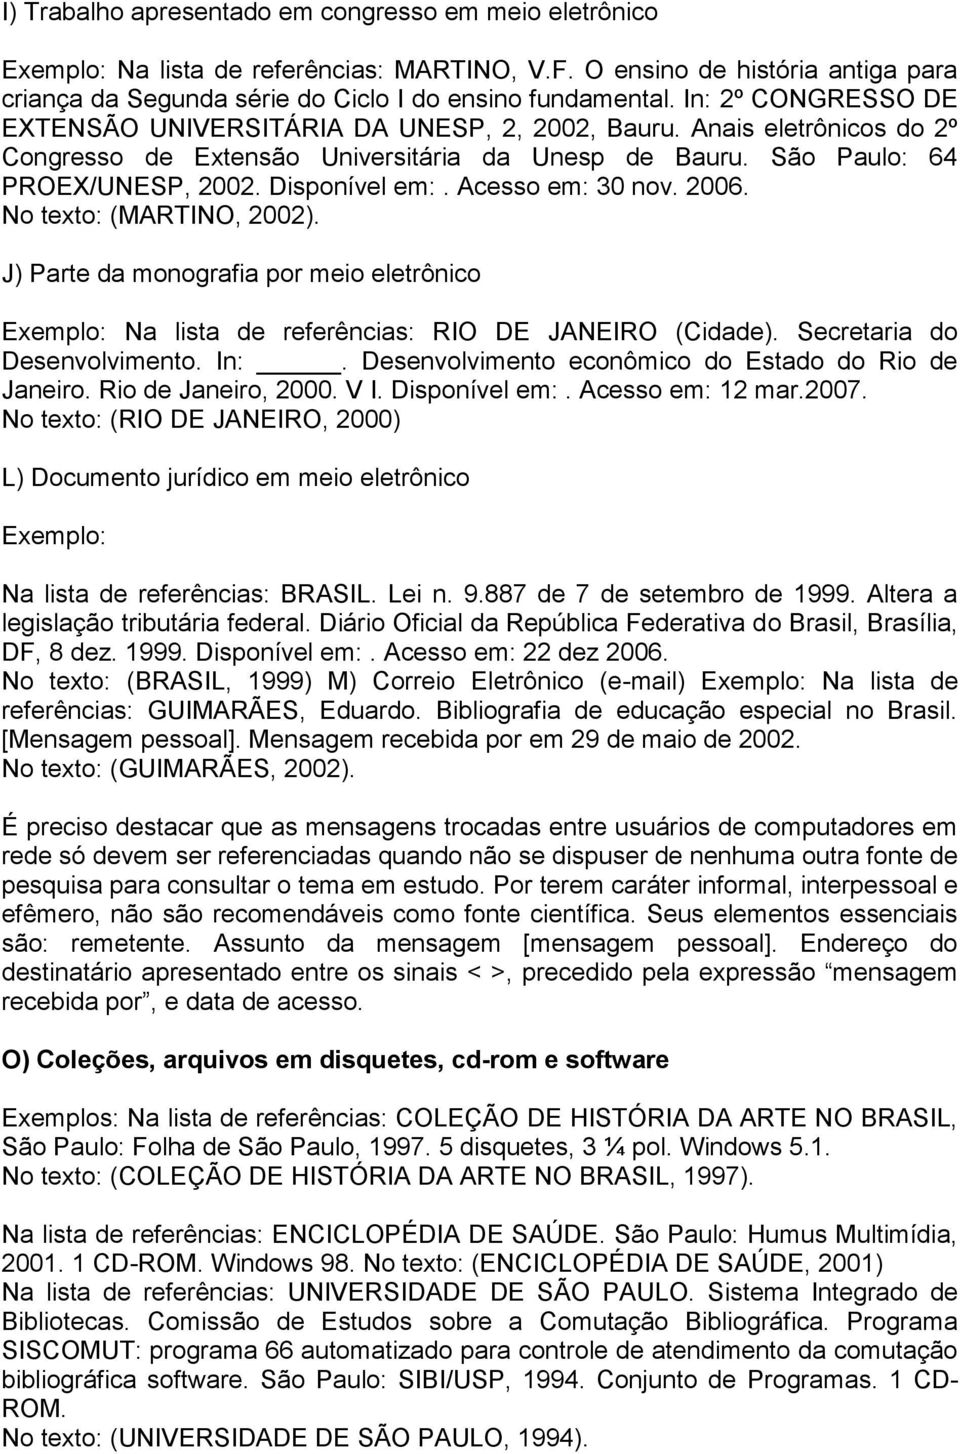 Acesso em: 30 nov. 2006. No texto: (MARTINO, 2002). J) Parte da monografia por meio eletrônico Exemplo: Na lista de referências: RIO DE JANEIRO (Cidade). Secretaria do Desenvolvimento. In:.